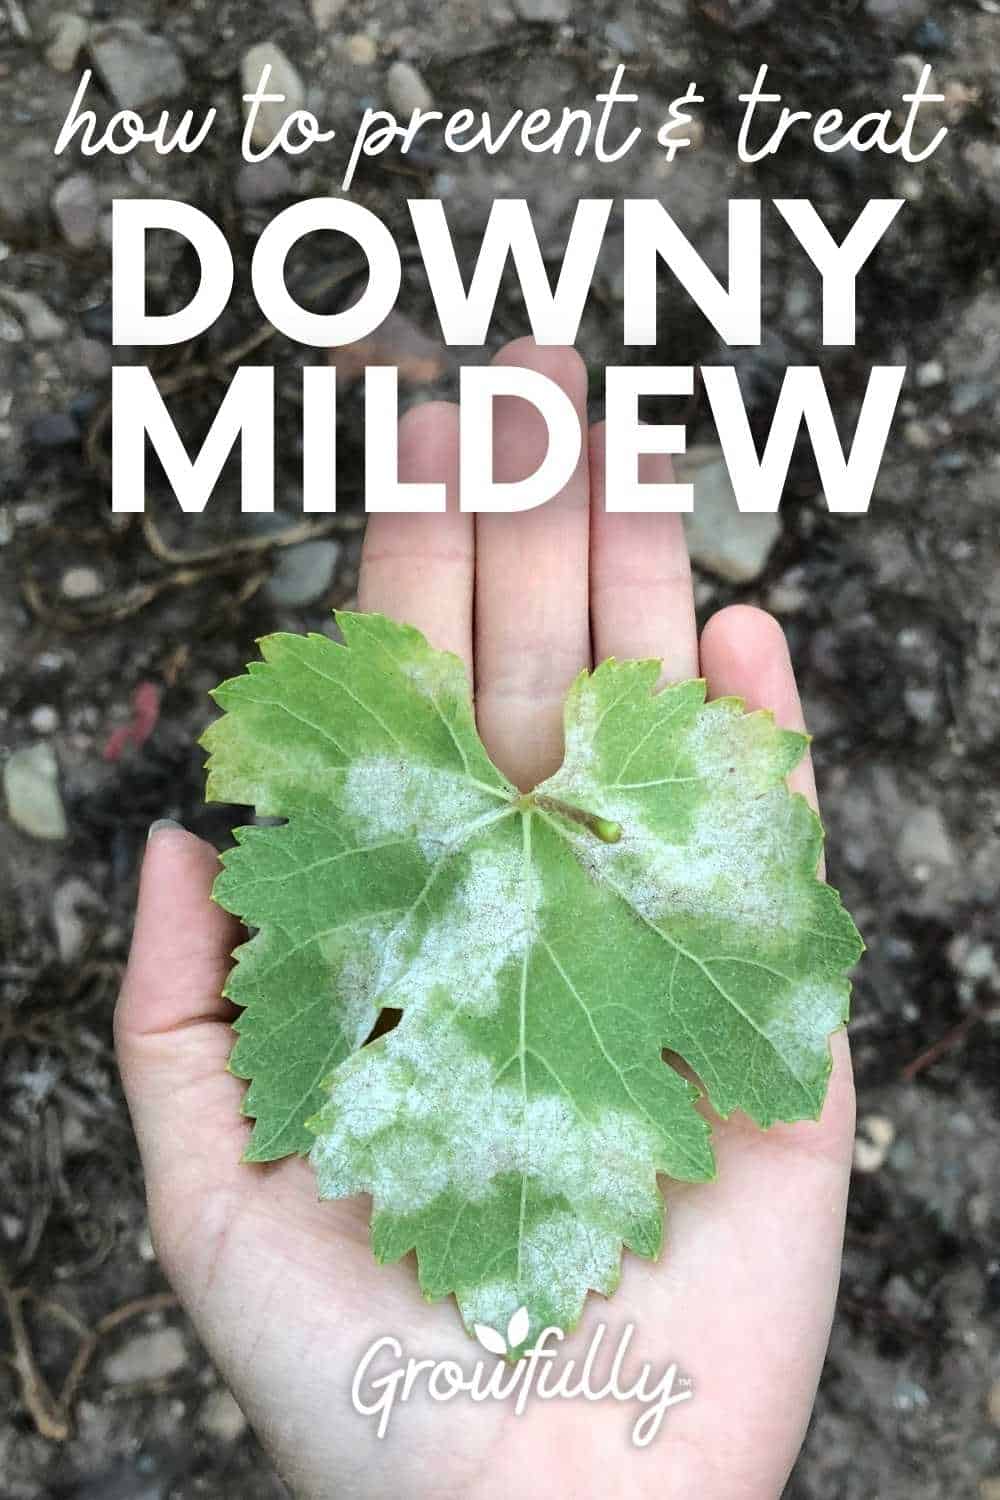 Peronosporosis or downy mildew attacks the garden: what to do?